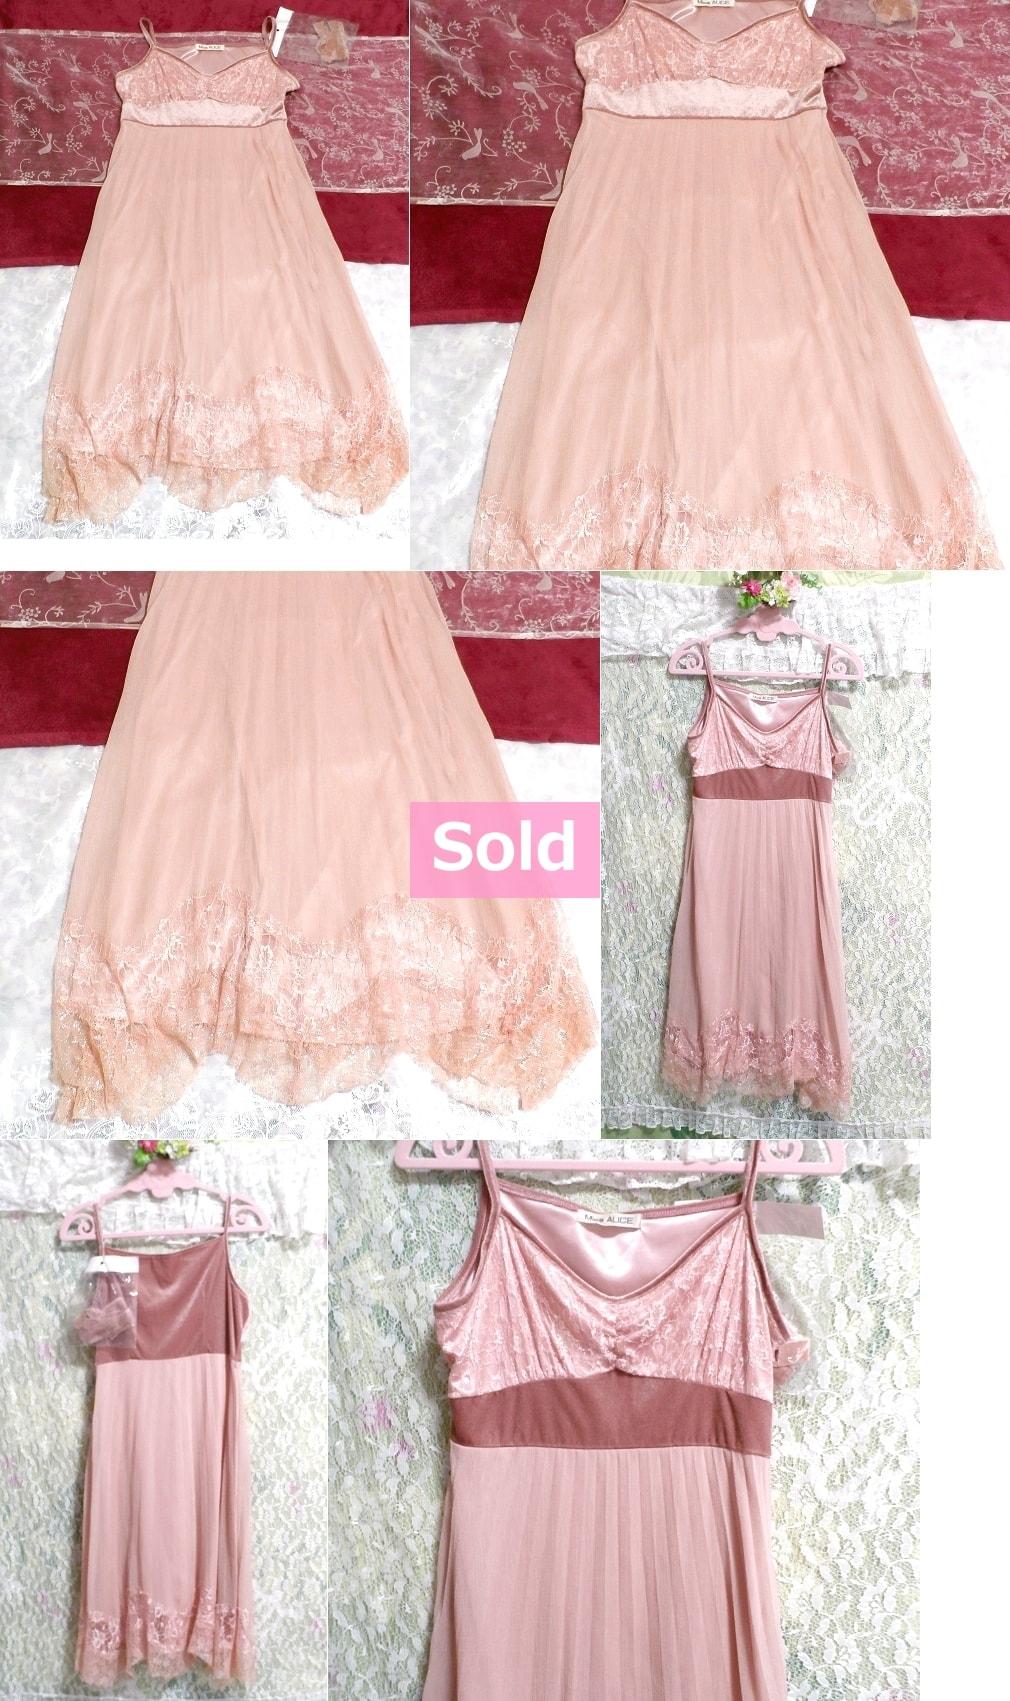 ピンクシフォンレースキャミソールワンピース/ネグリジェ Pink chiffon lace camisole onepiece/negligee